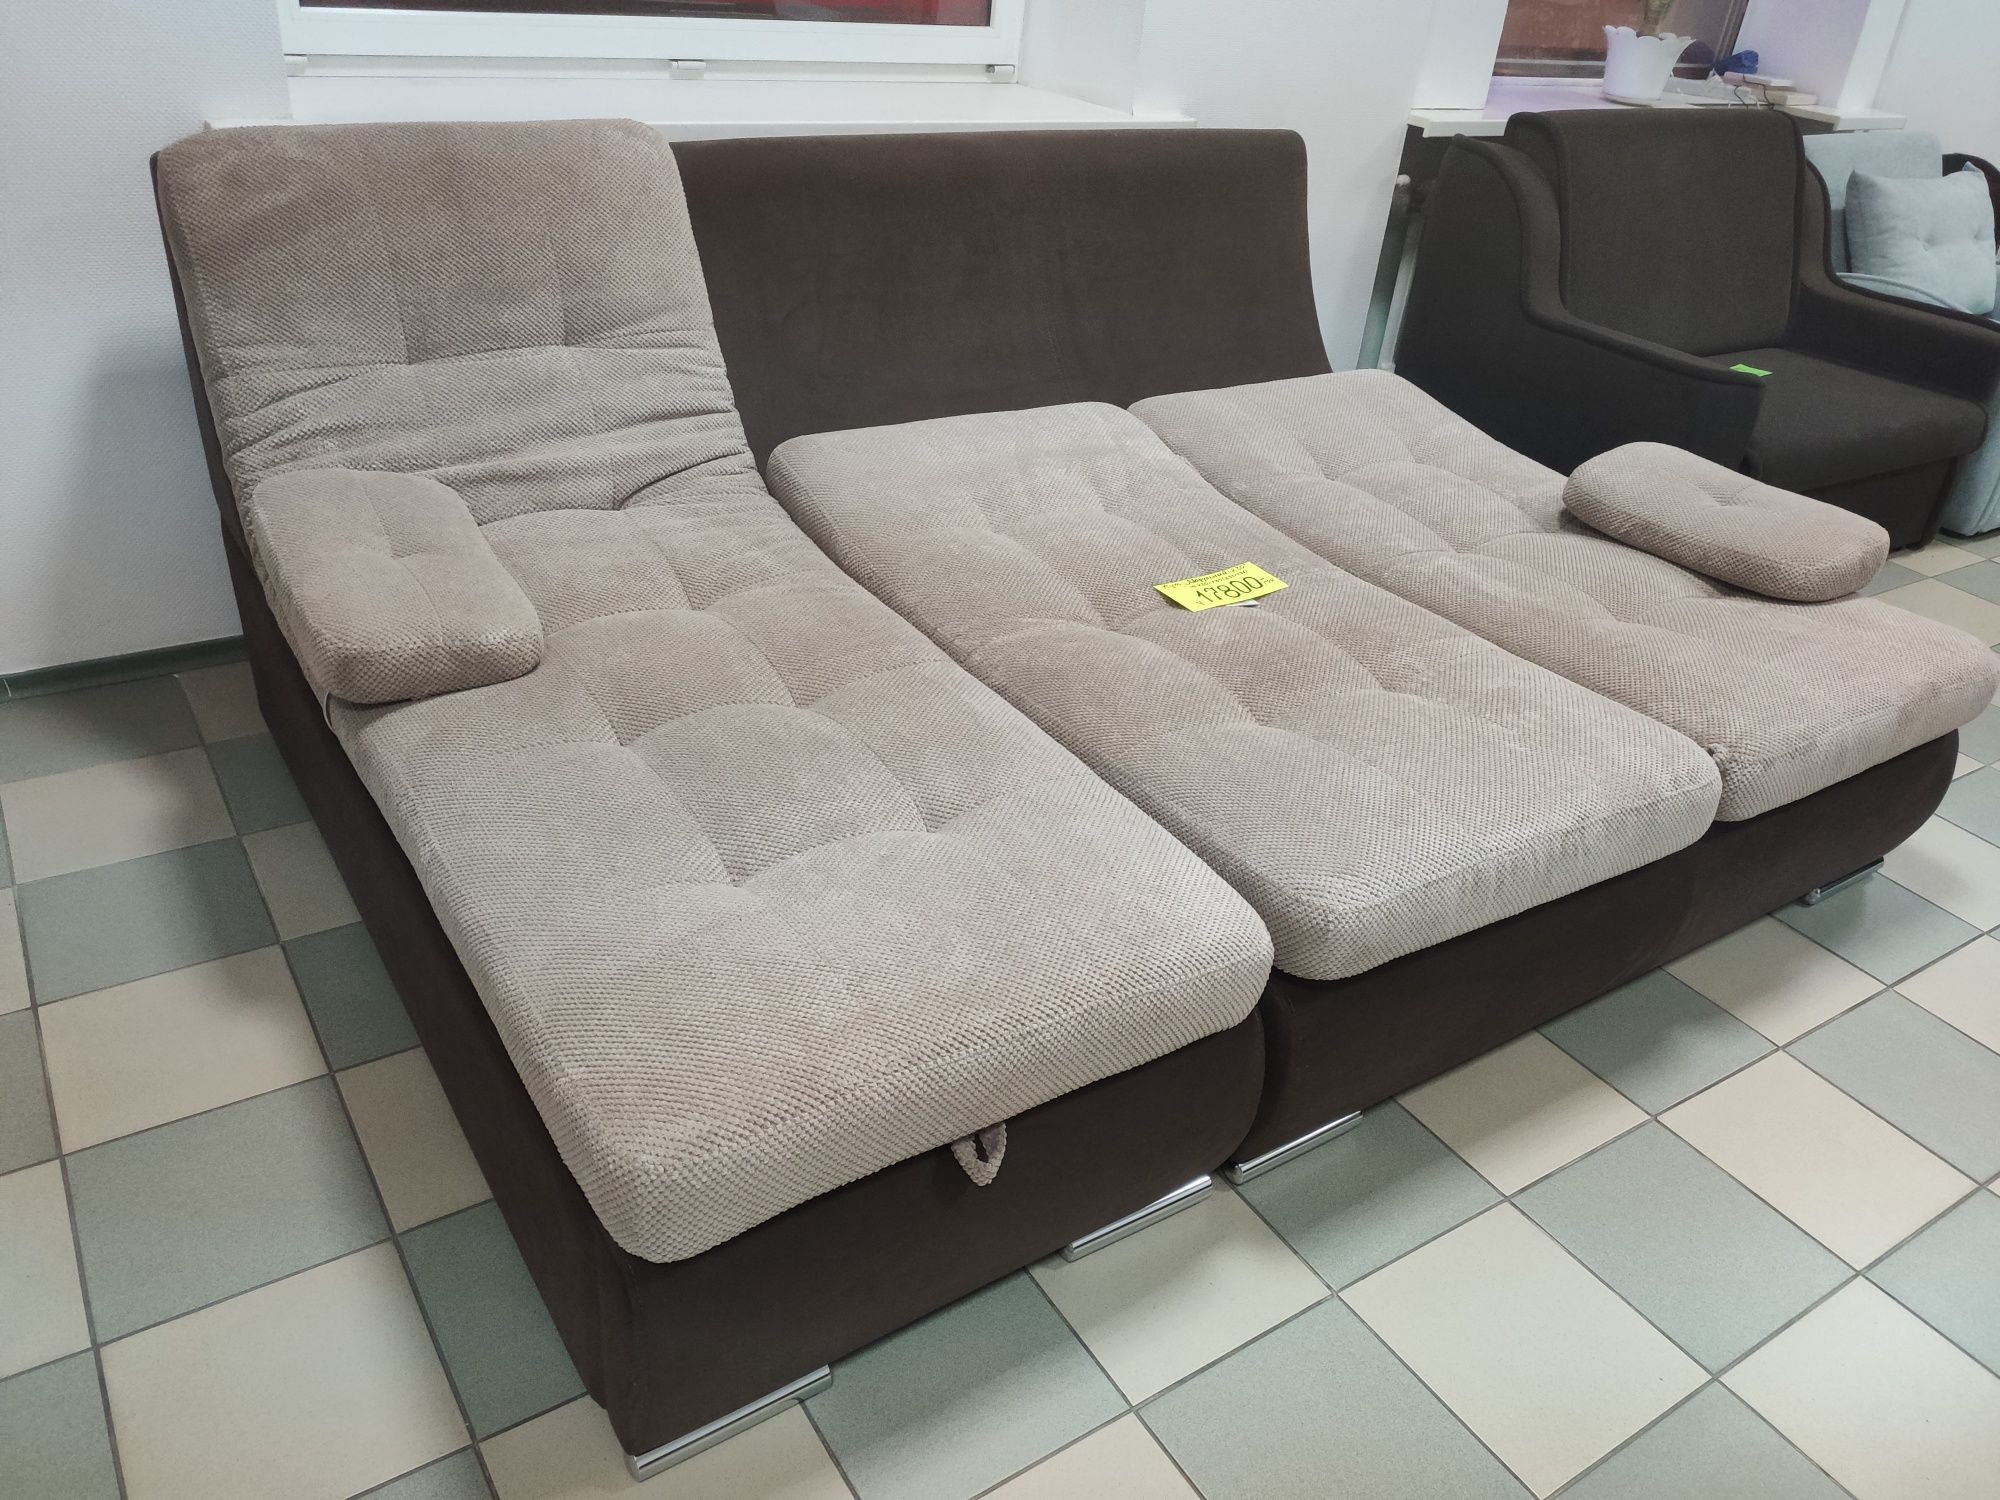 Угловой модульный диван прямо с фабрики Бозен Лорис